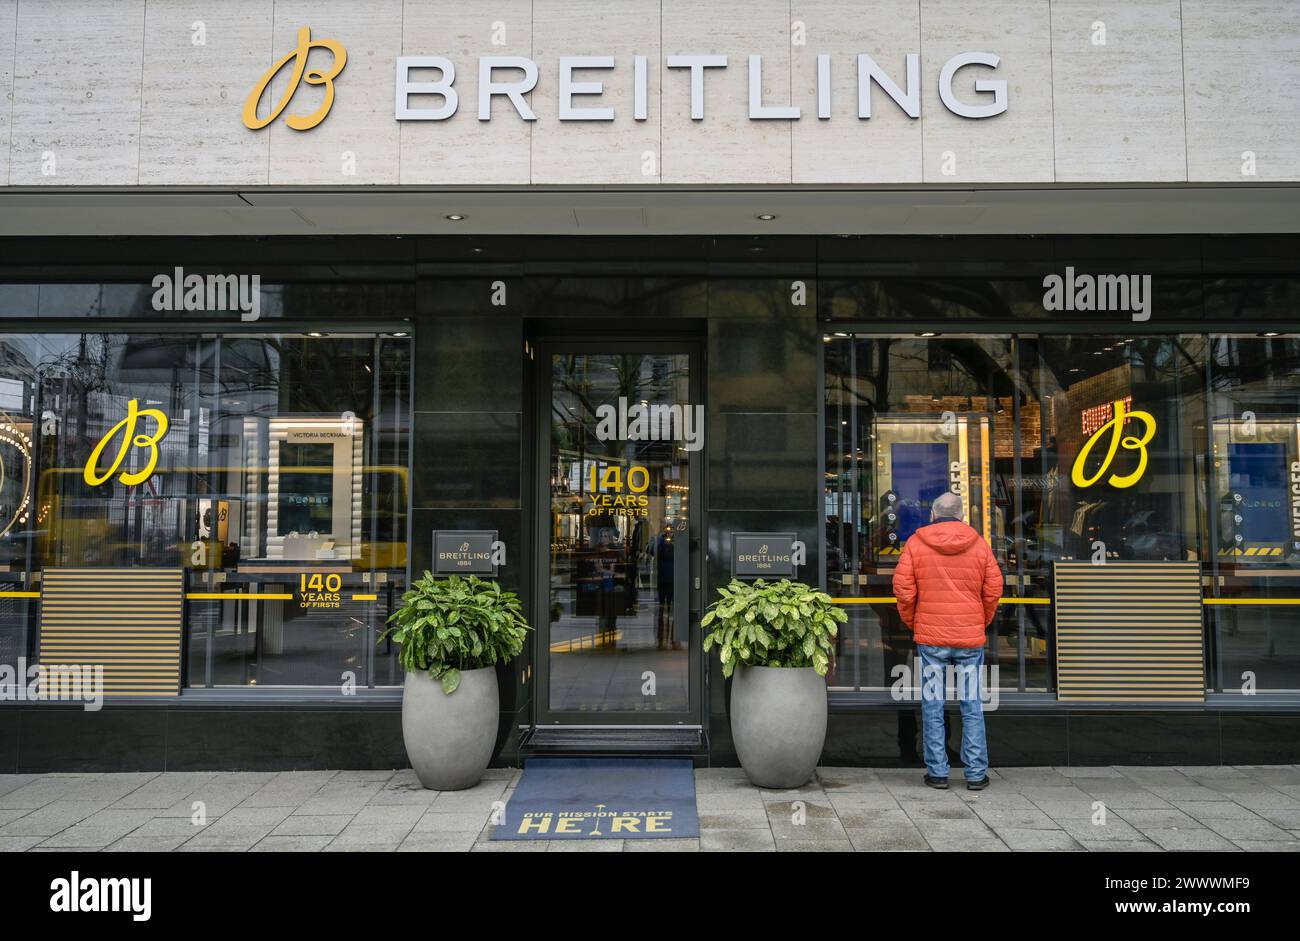 Breitling Uhren, Geschäft, Kurfürstendamm, Charlottenburg, Berlin, Deutschland Stock Photo